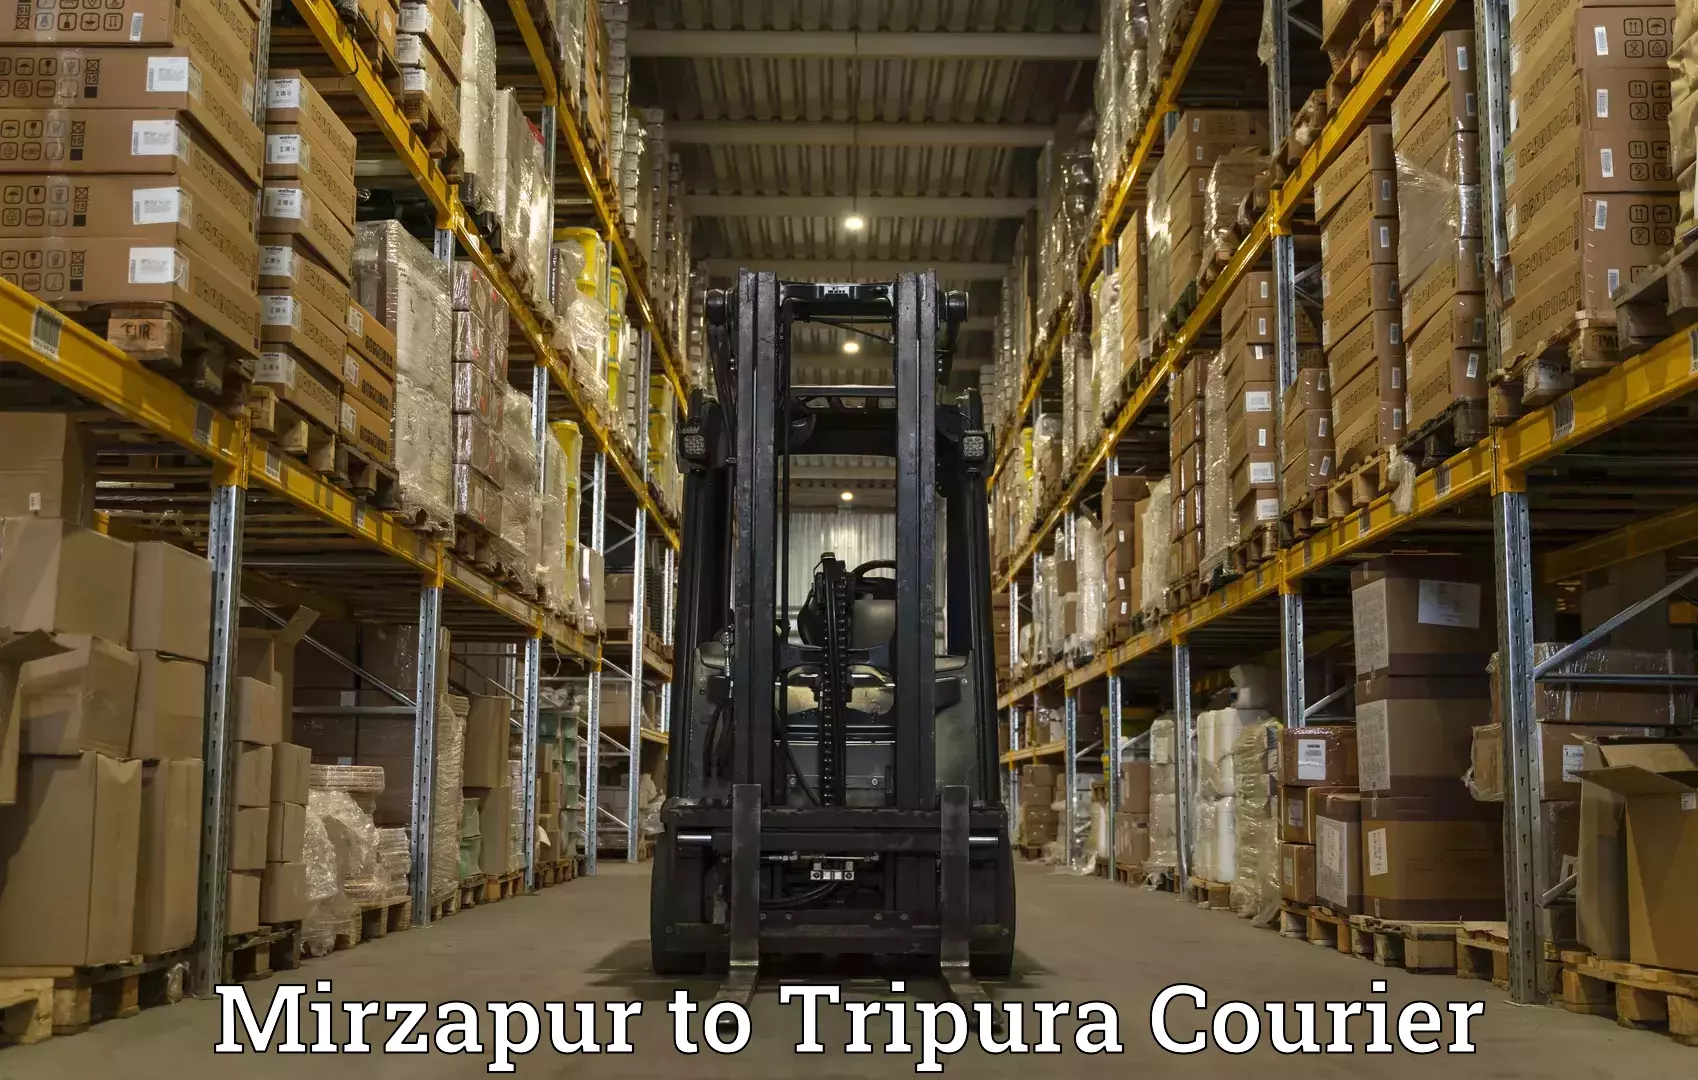 Express courier facilities Mirzapur to Aambasa